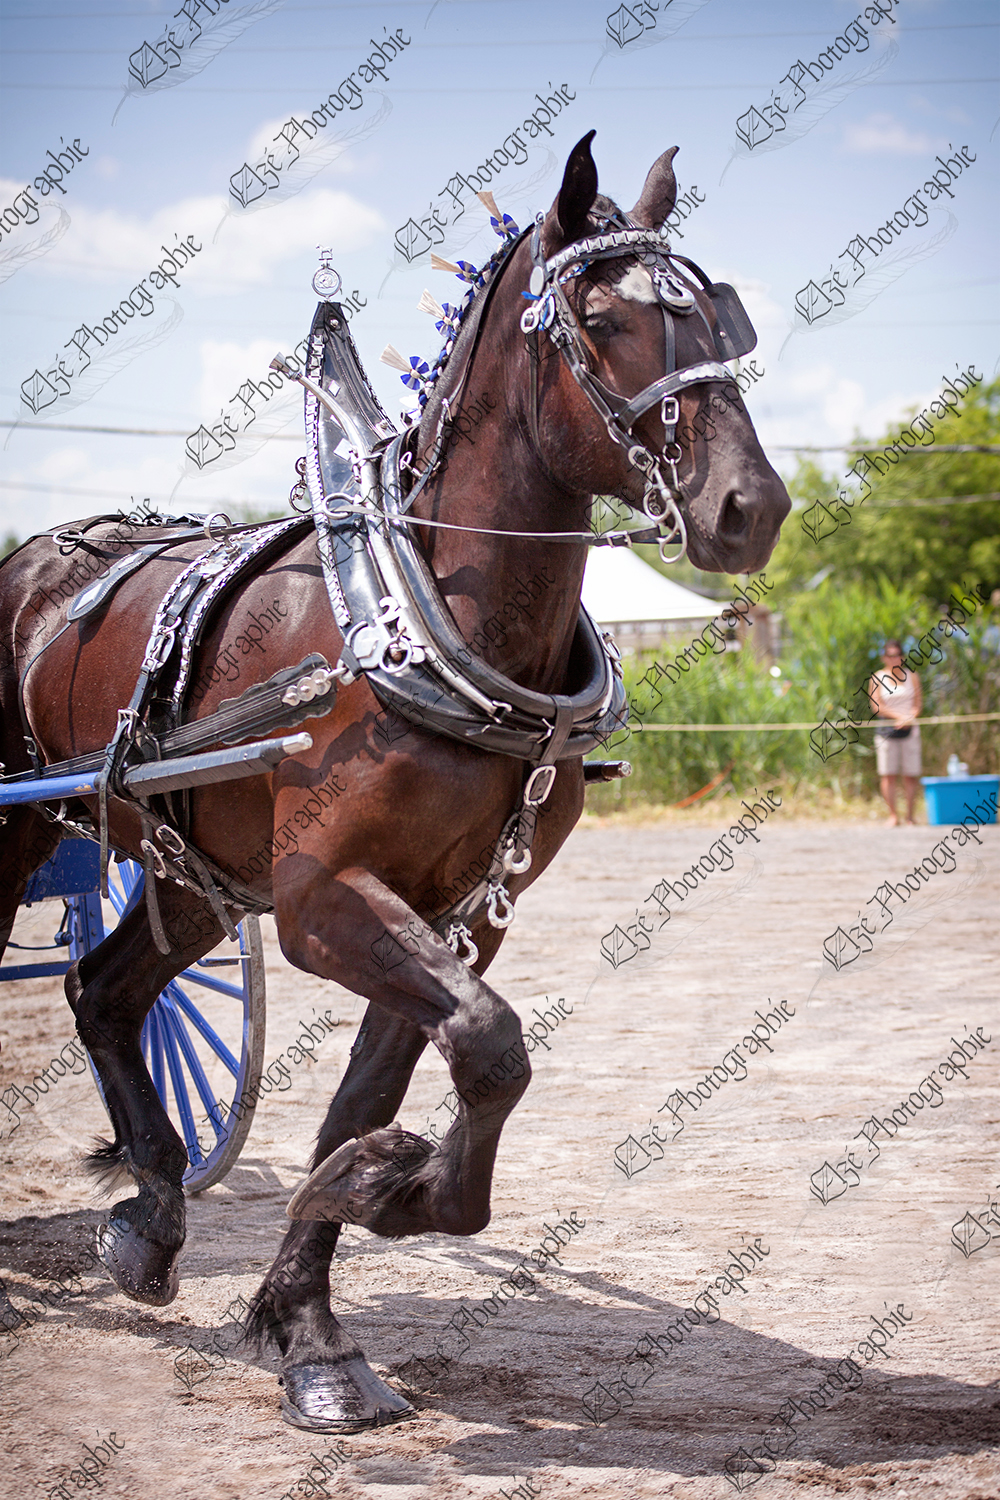 elze_photo_6984_competition_equestre_cheval_percheron_horse_black